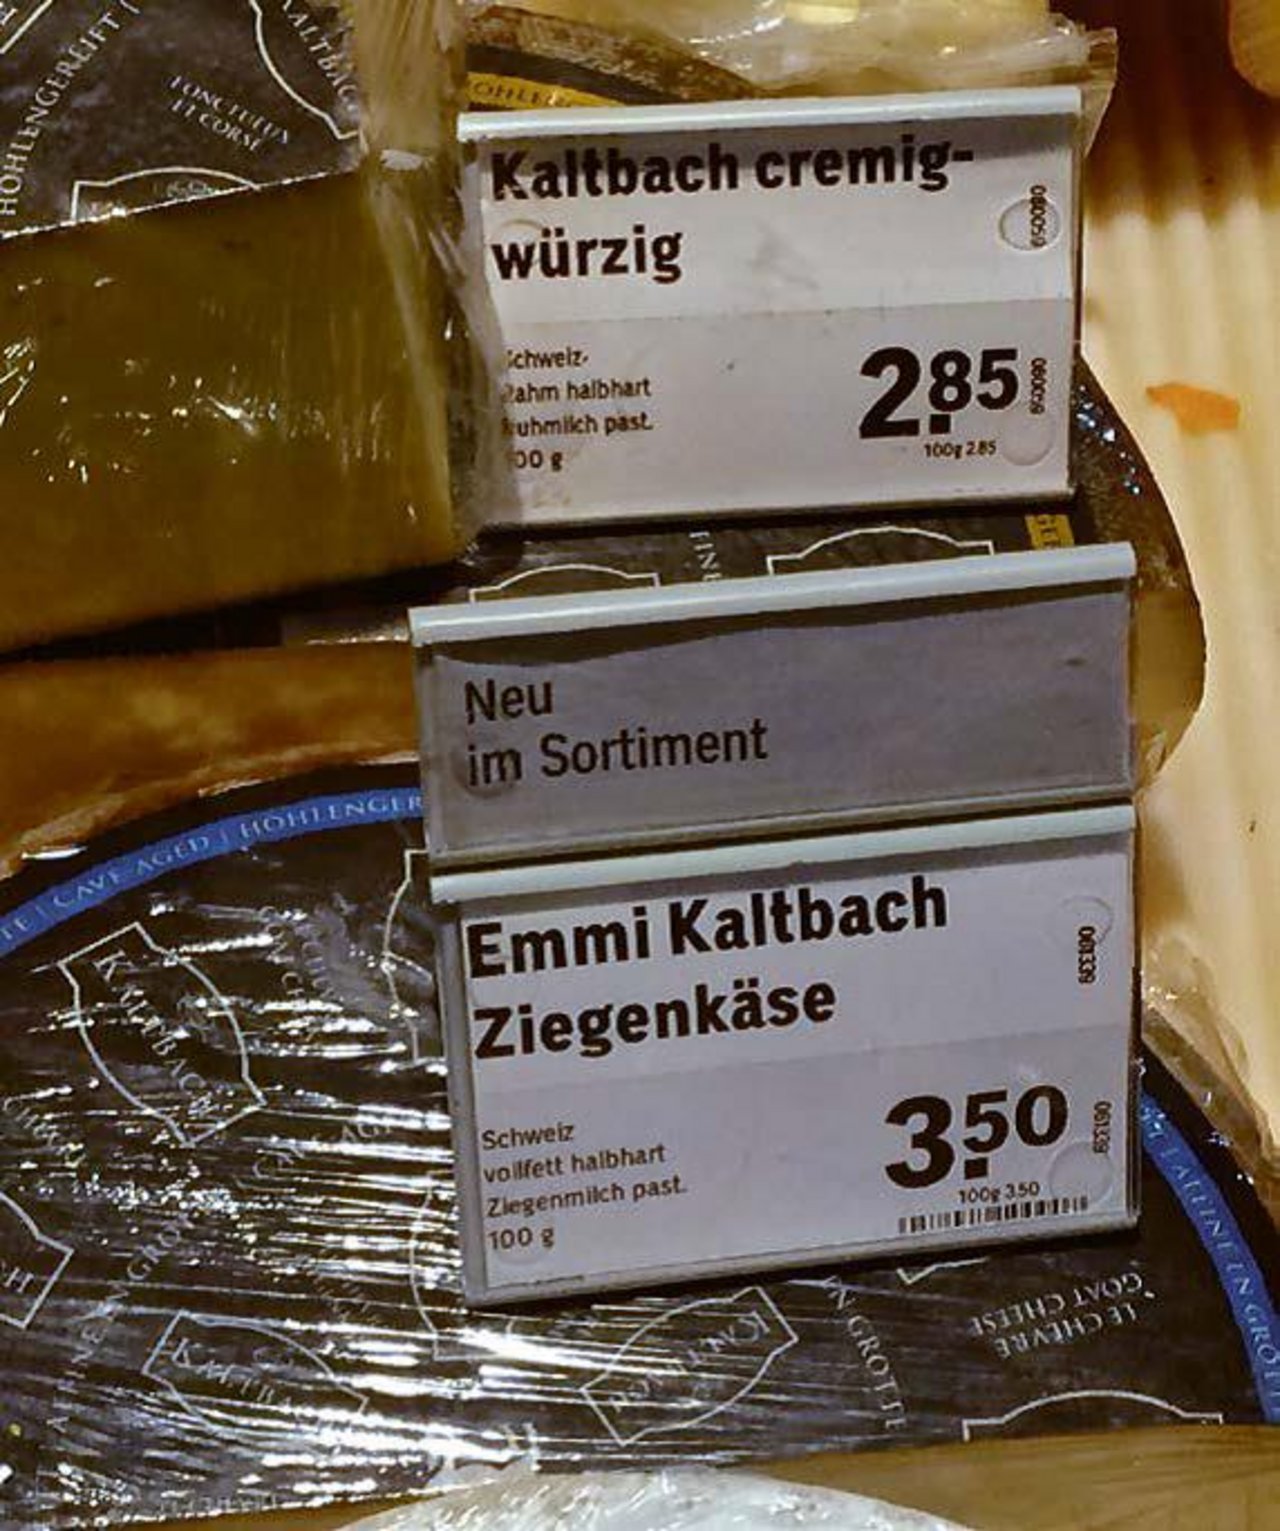 Bis zur Nachfrage bei der Coop-Medienstelle stammte der Kaltbach-Ziegenkäse aus der Schweiz...